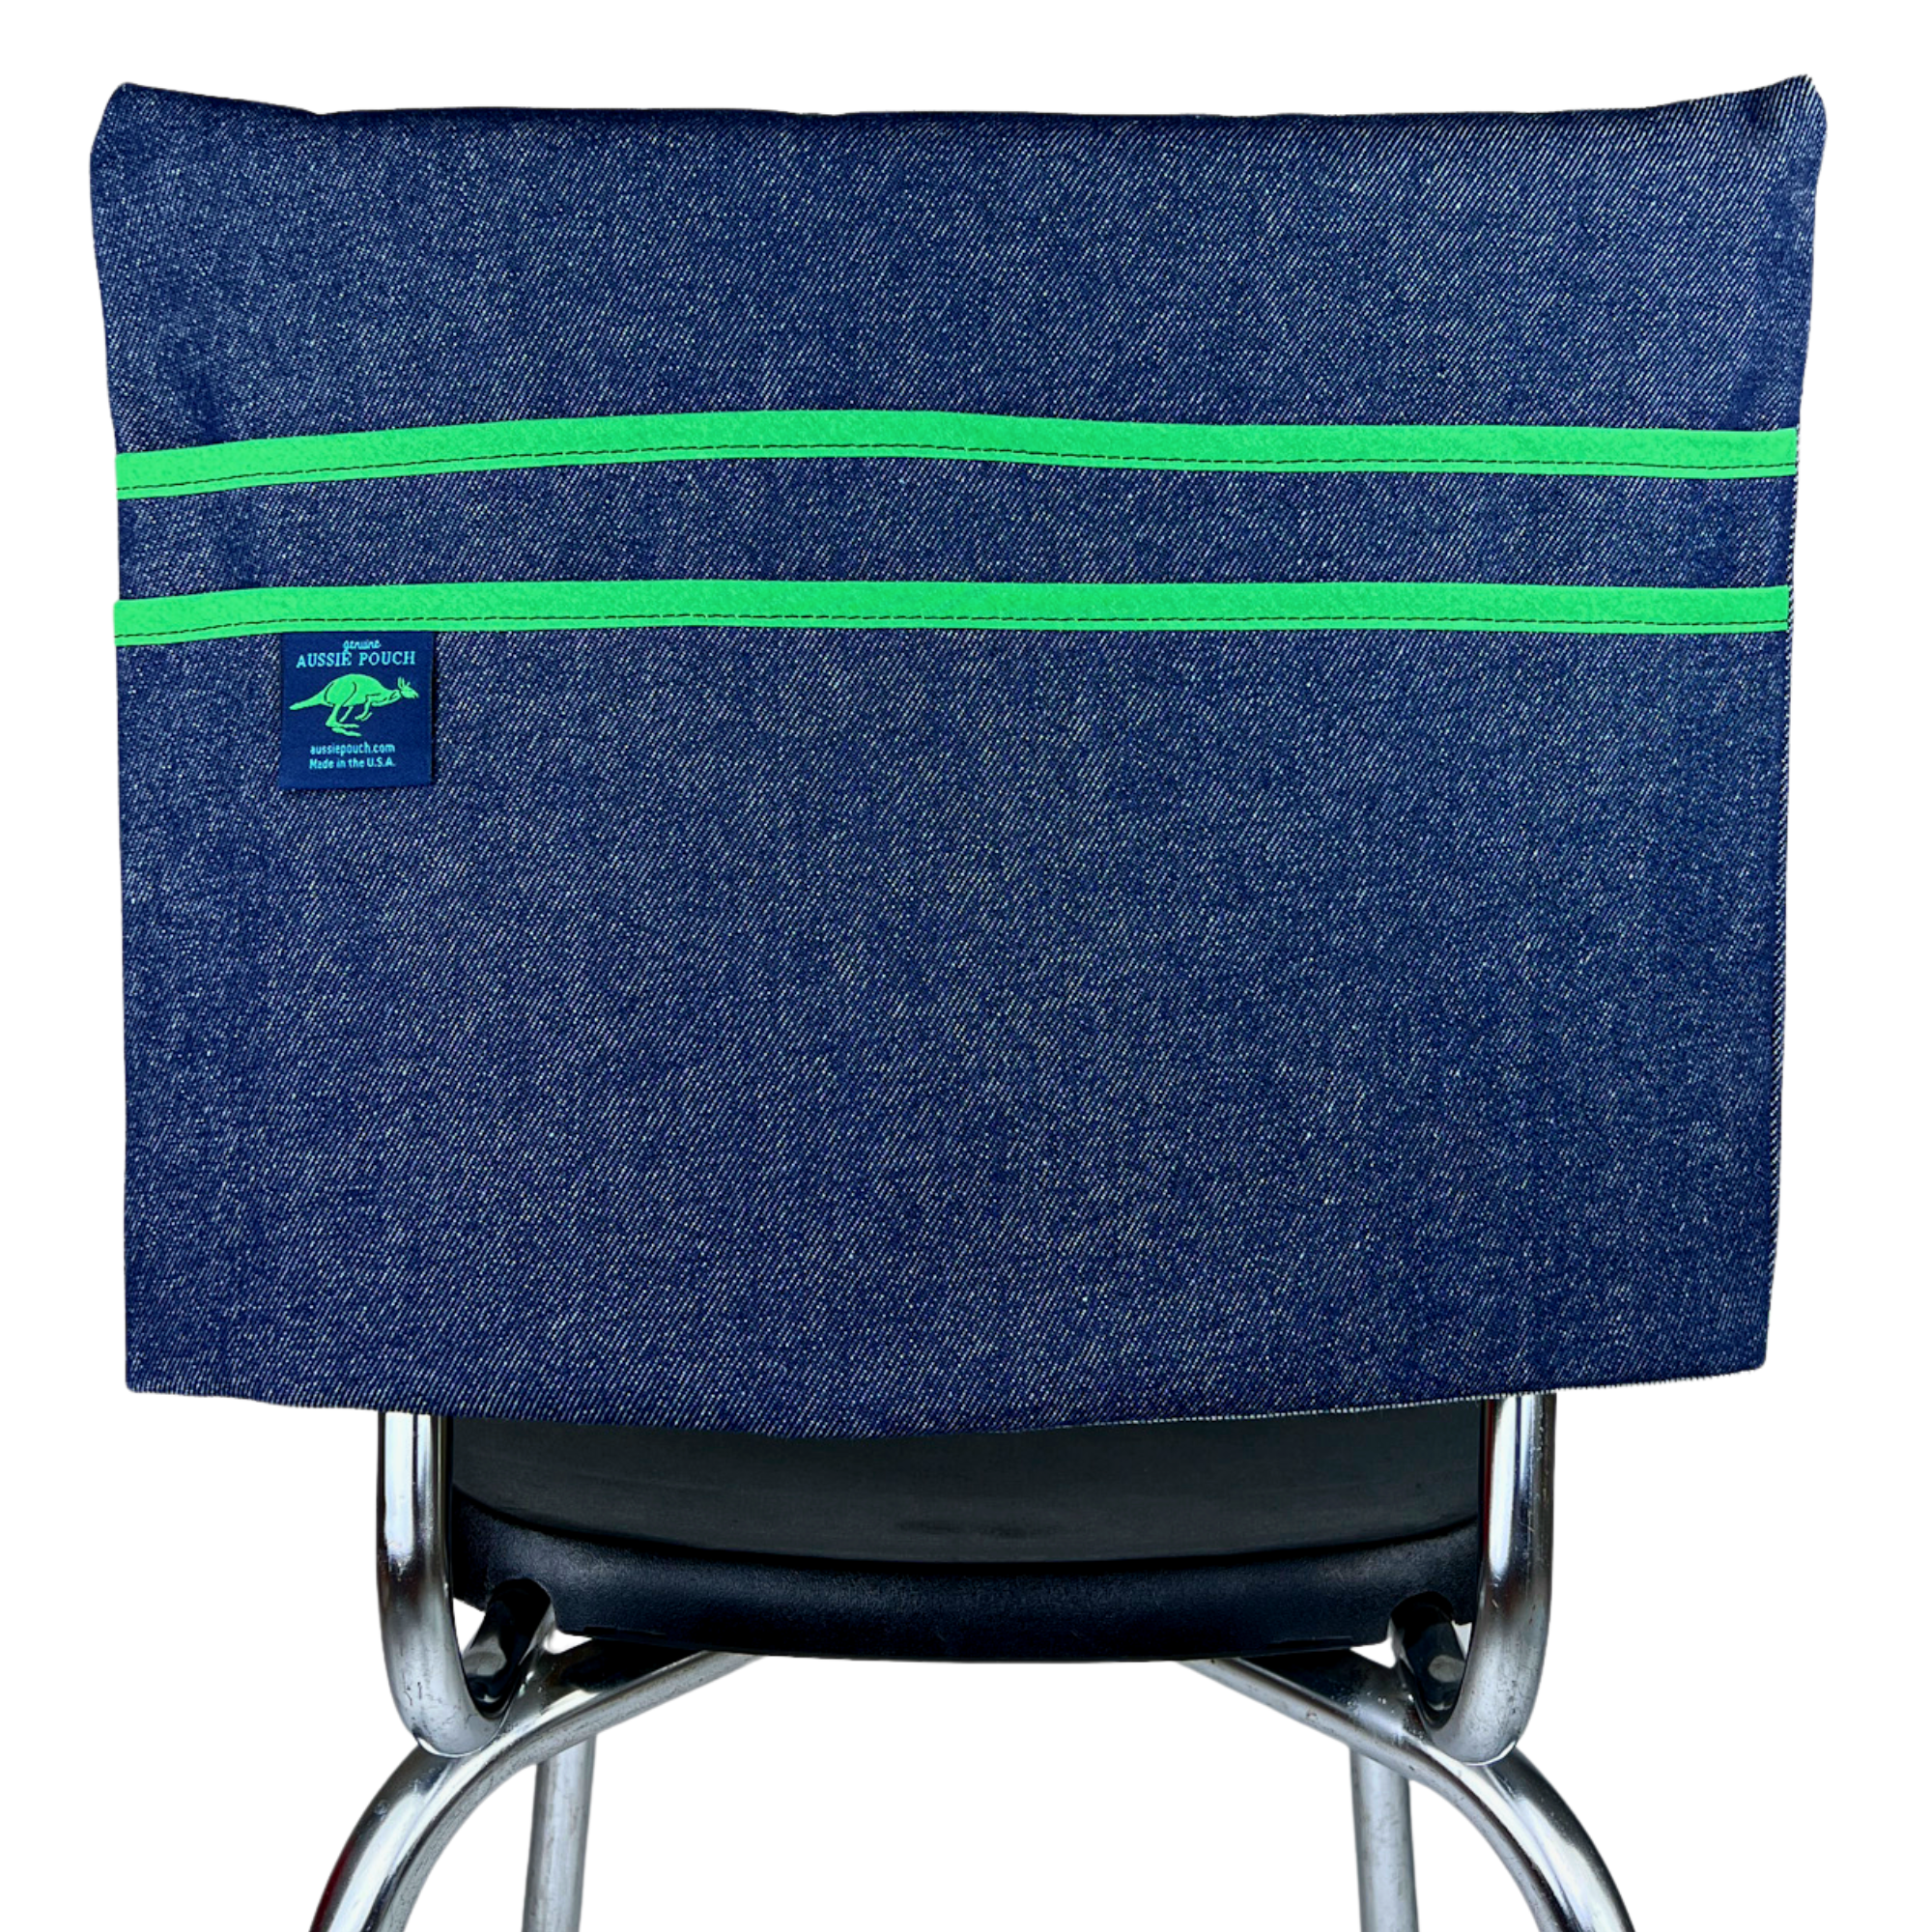 Aussie Pouch® Classic School Chair Pocket Denim with Green Trim